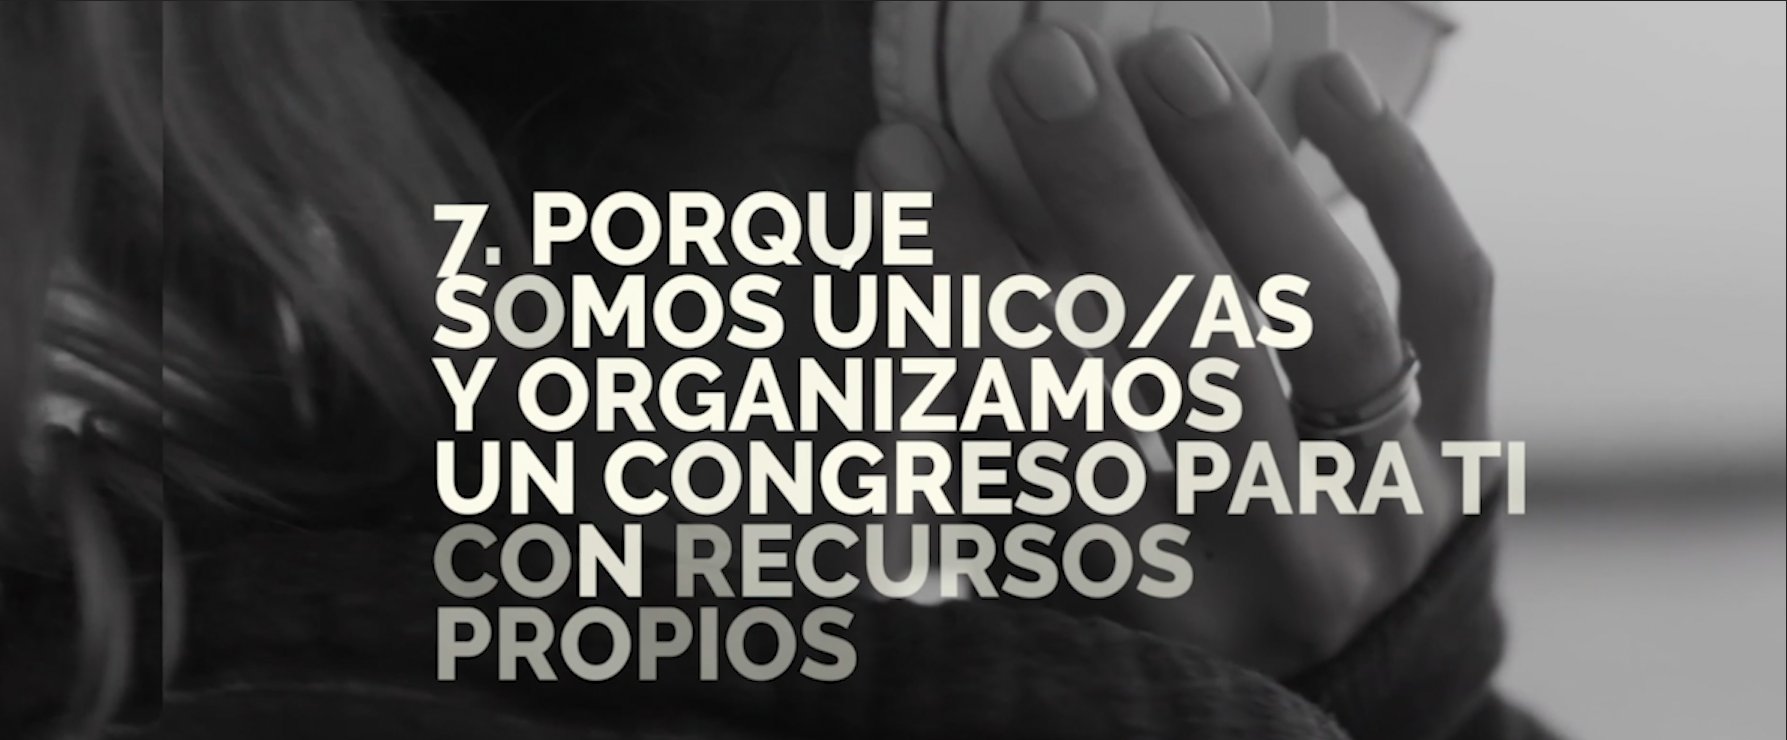 7. Somos únicos: impulsamos un congreso con recursos propios - 10 +1 razones para venir a #PLMsemFYC